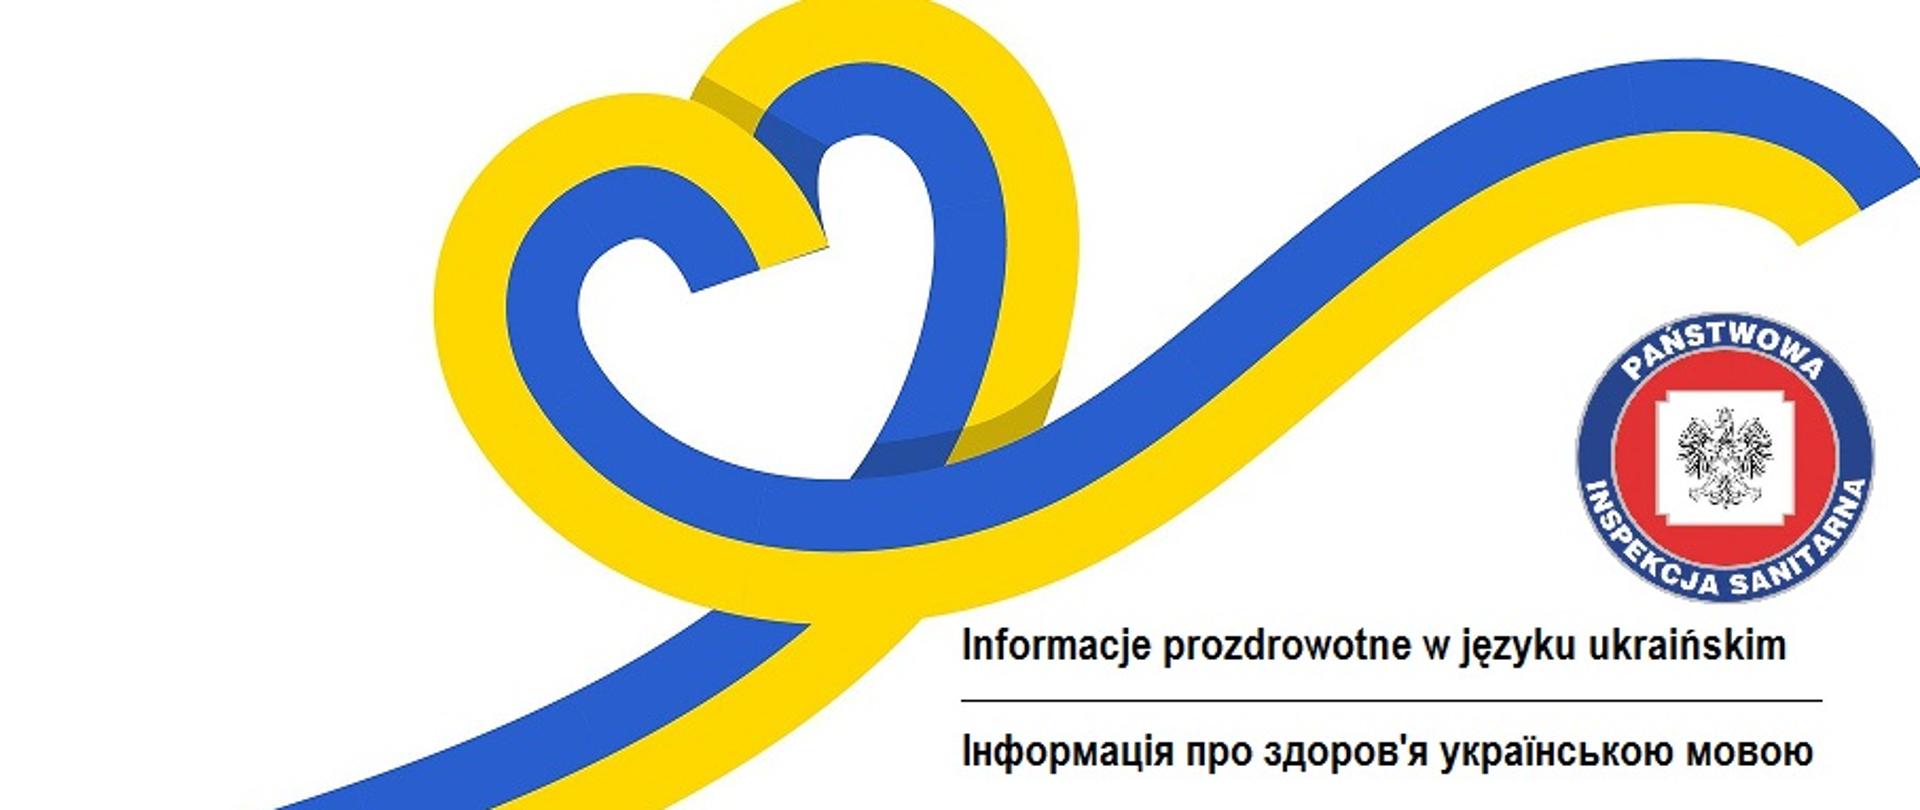 grafika przedstawiająca serce ułożone ze wstęgi w kolorach flagi Ukrainy, logo państwowej Inspekcji Sanitarnej i napis Informacje prozdrowotne w języku ukraińskim